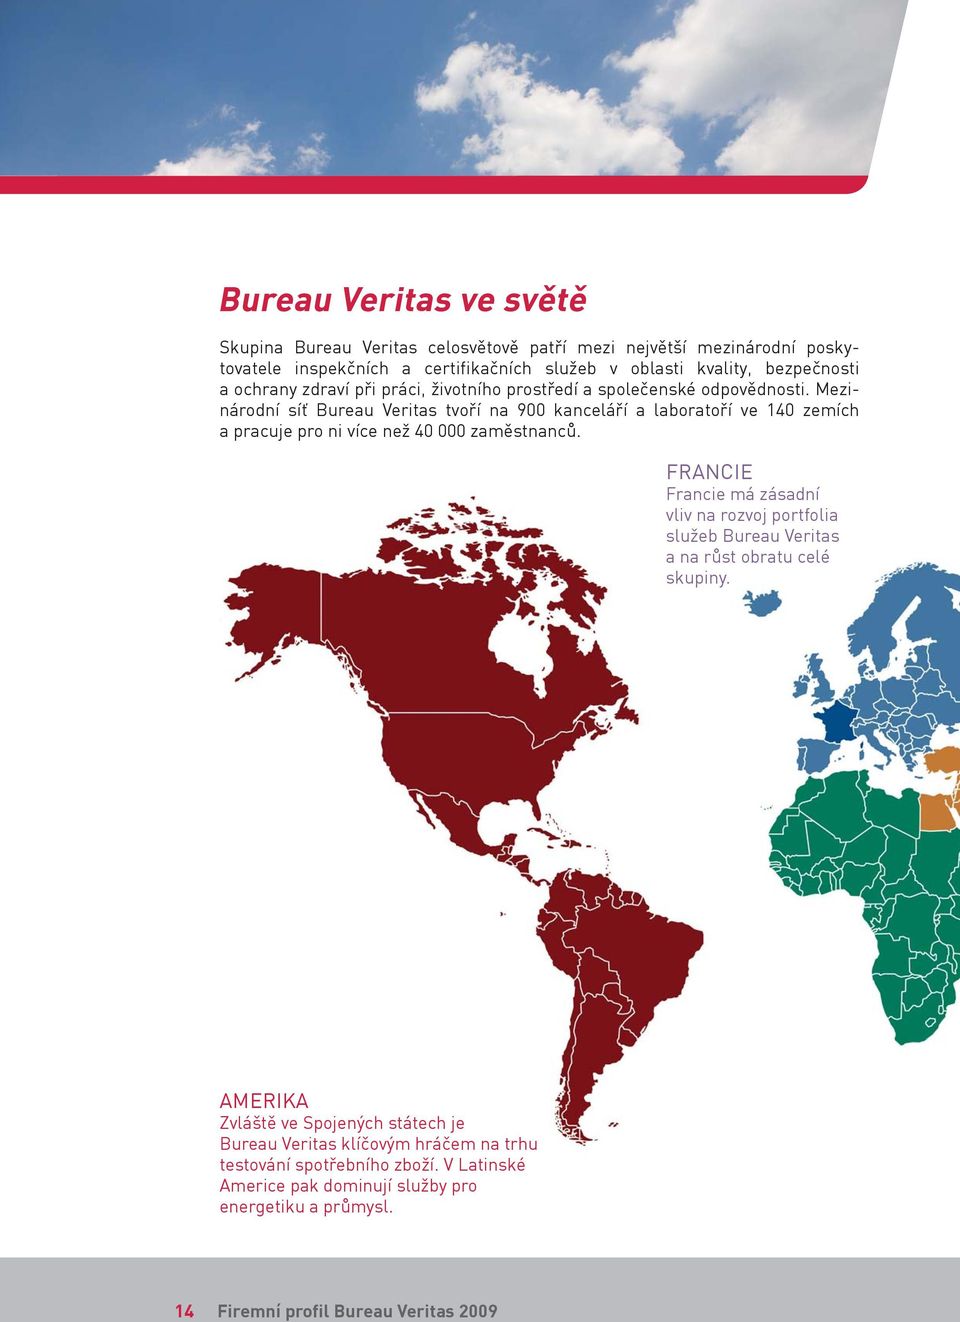 Mezinárodní síť Bureau Veritas tvoří na 900 kanceláří a laboratoří ve 140 zemích a pracuje pro ni více než 40 000 zaměstnanců.